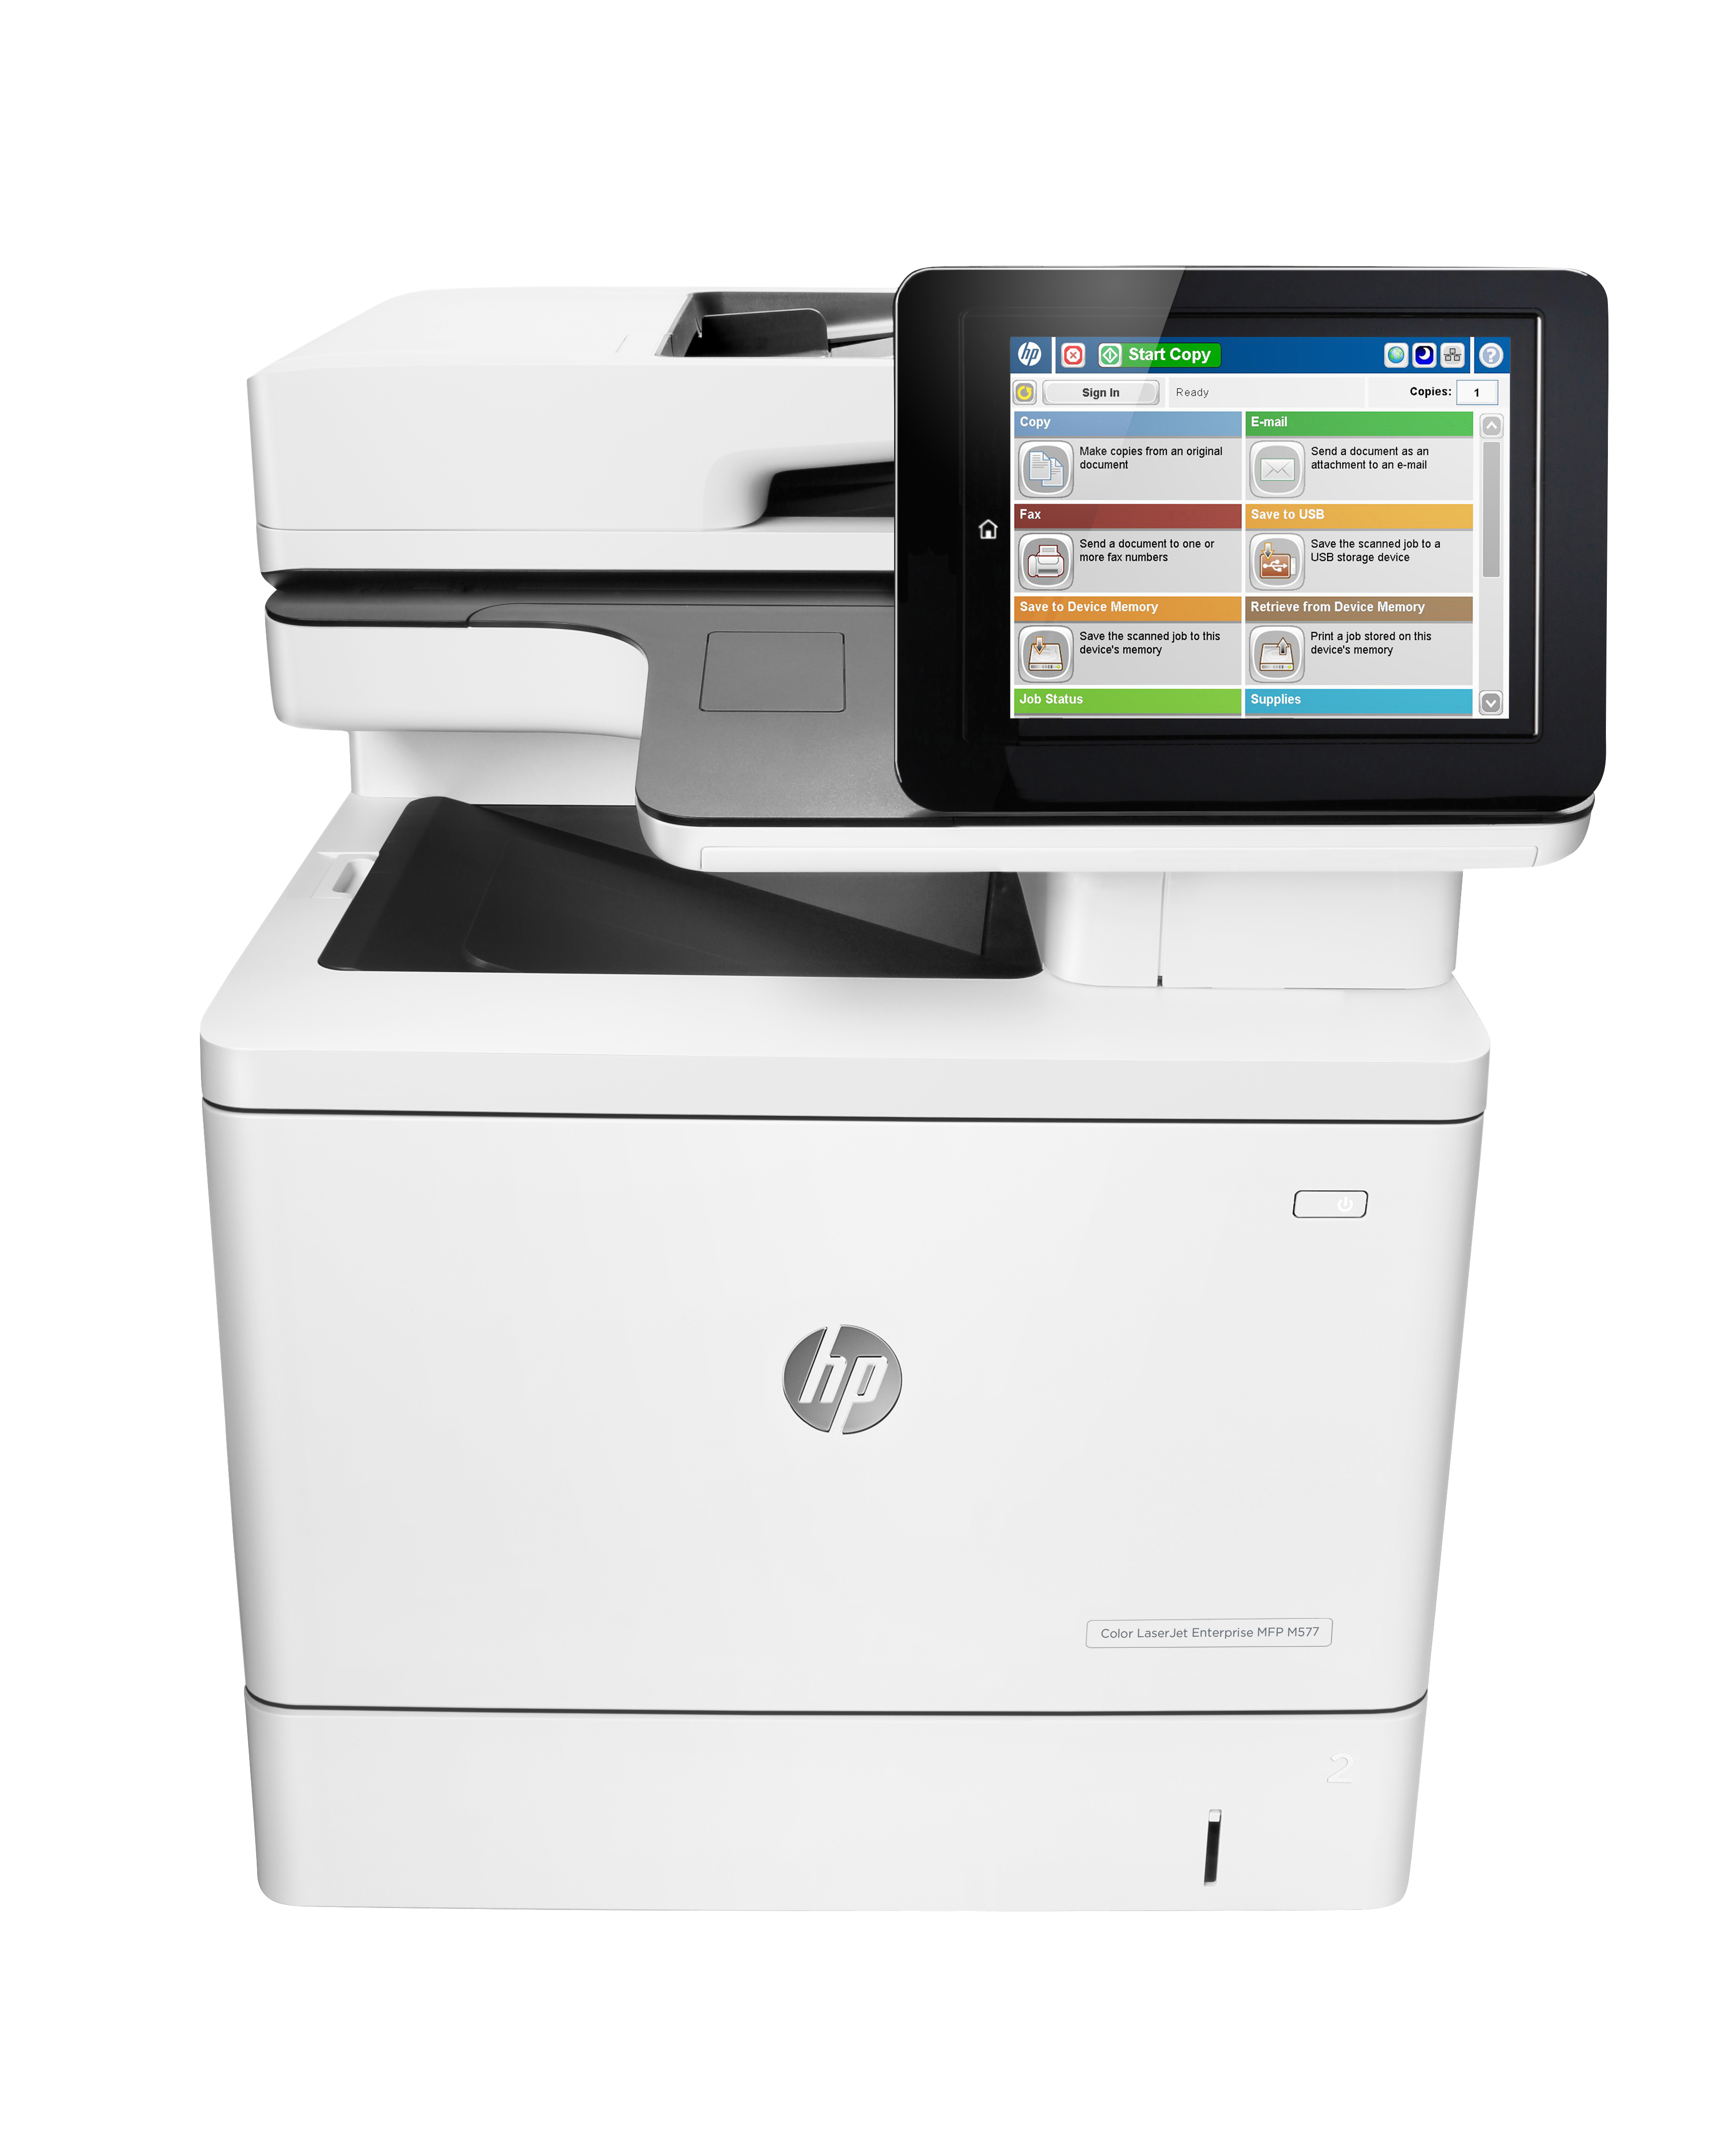 HP LaserJet Enterprise MFP M577dn - Multifunktionsdrucker - Farbe - Laser - Legal (216 x 356 mm)